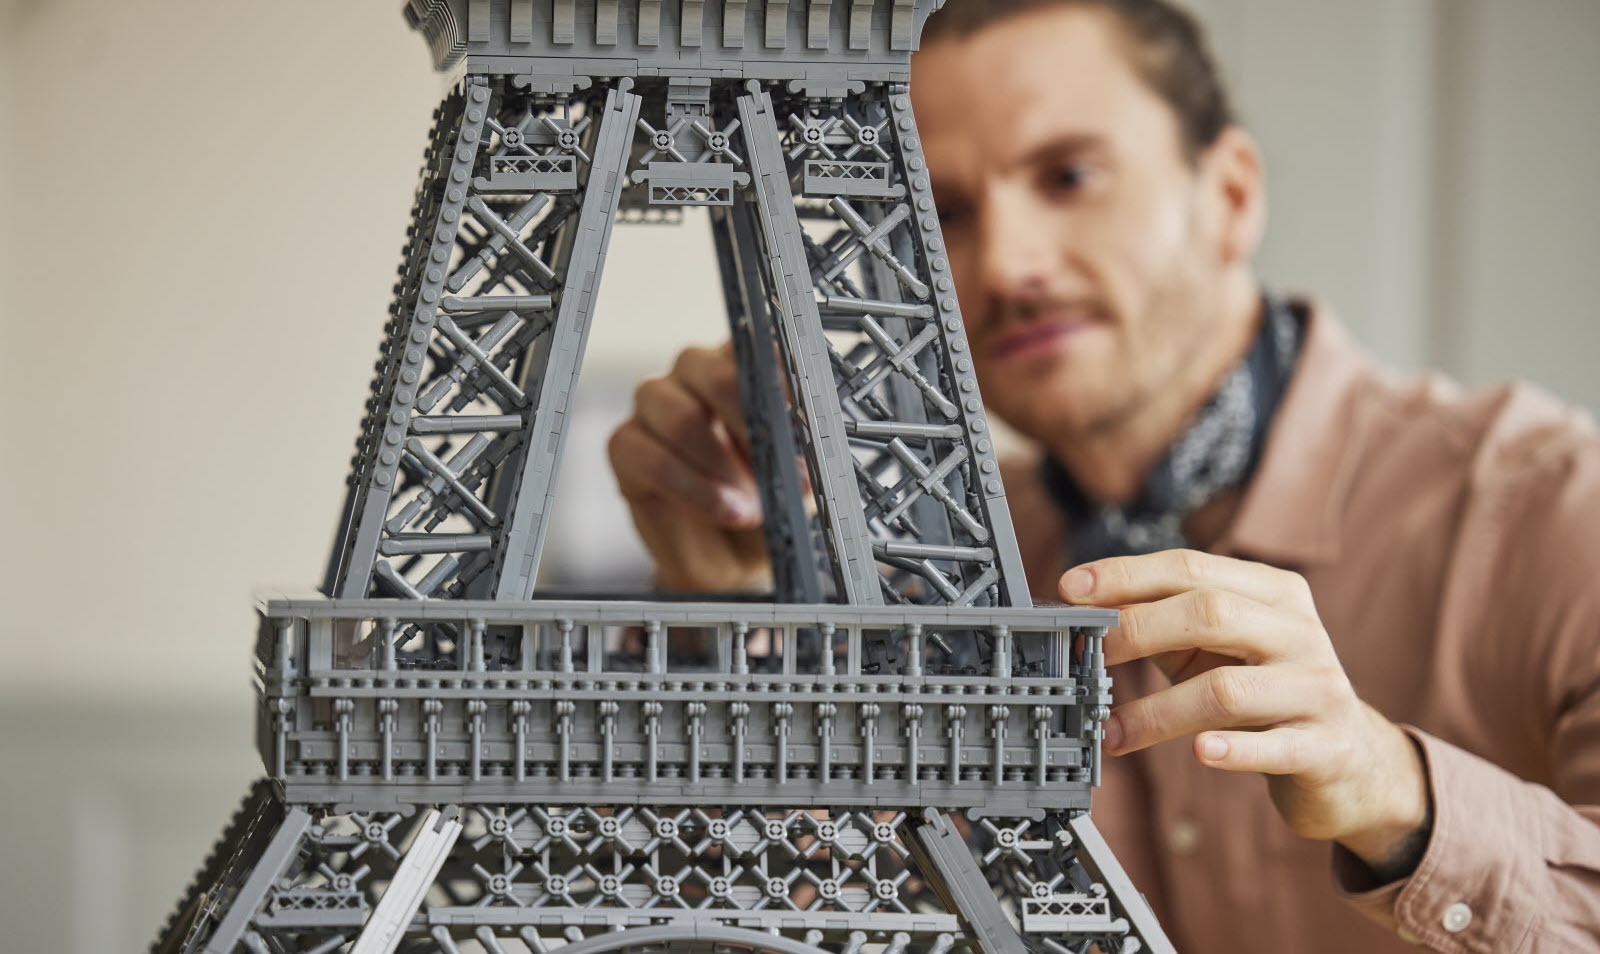 Lego представили модель Эйфелевой башни высотой больше метра